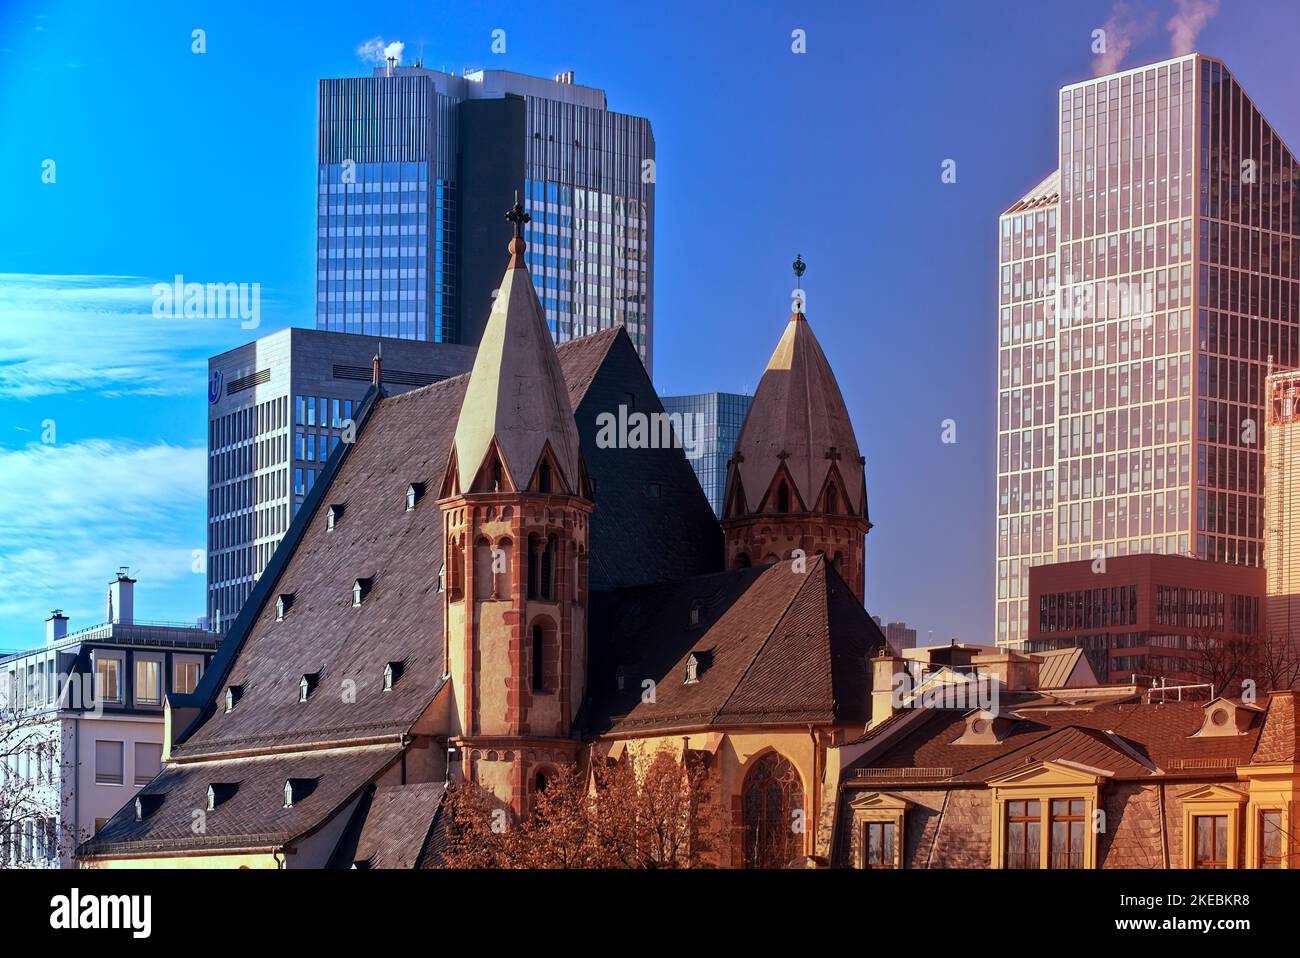 Frankfurt, 30. Dezember 2019: Eine mittelalterliche Kirche und die modernen Glastürme des Bankenviertels stehen in Frankfurt im harten Kontrast Stockfoto